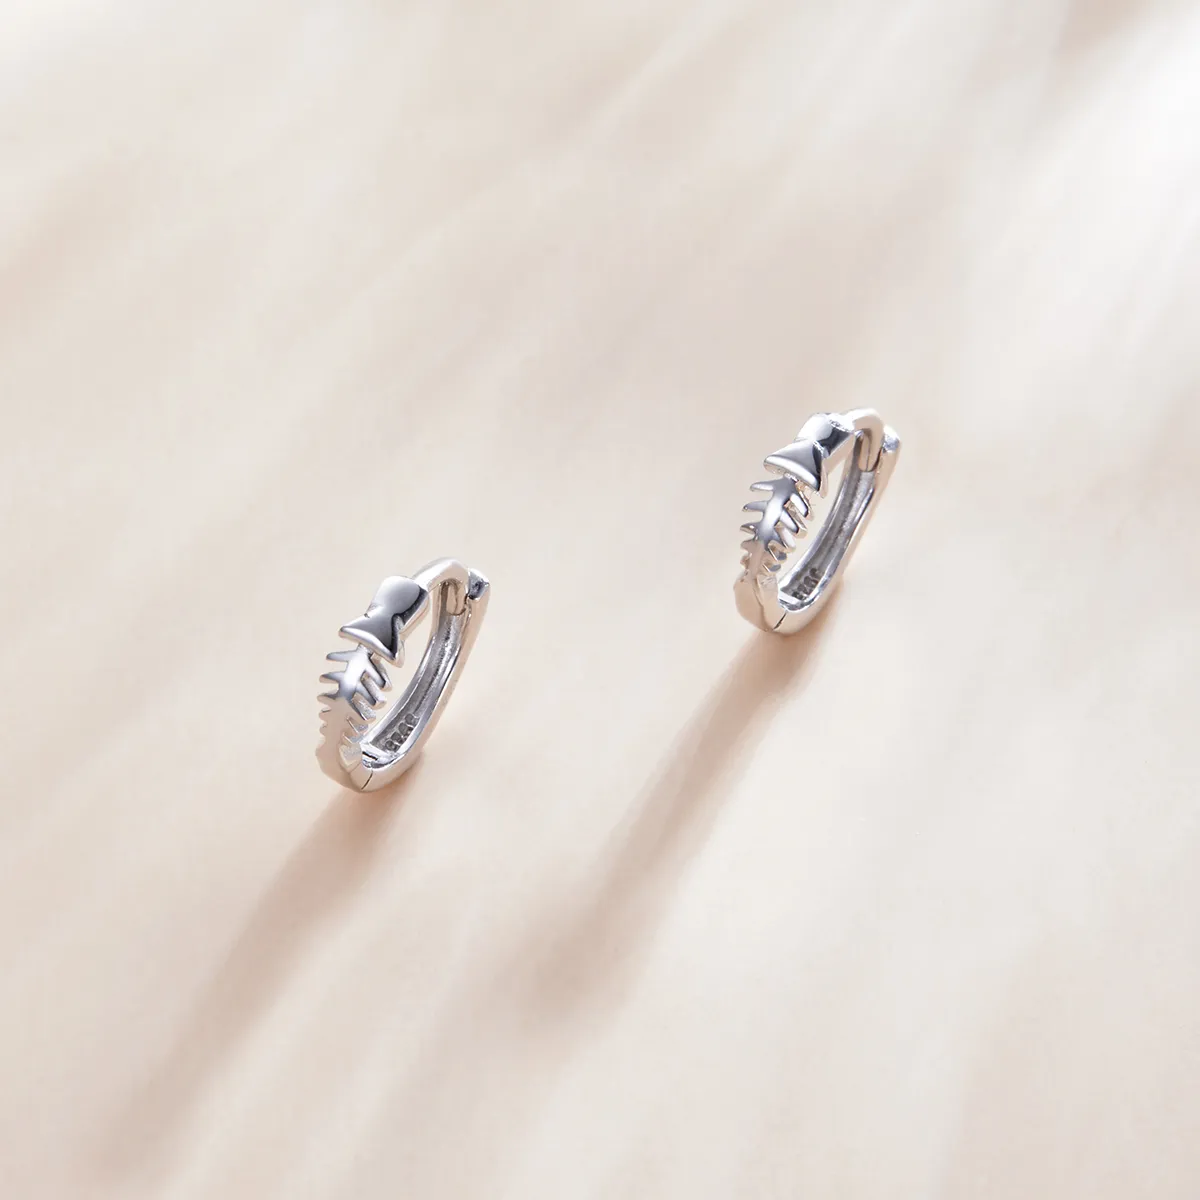 Pandora Style Silver Delicate Fish Bones Hoop Earrings - SCE1108